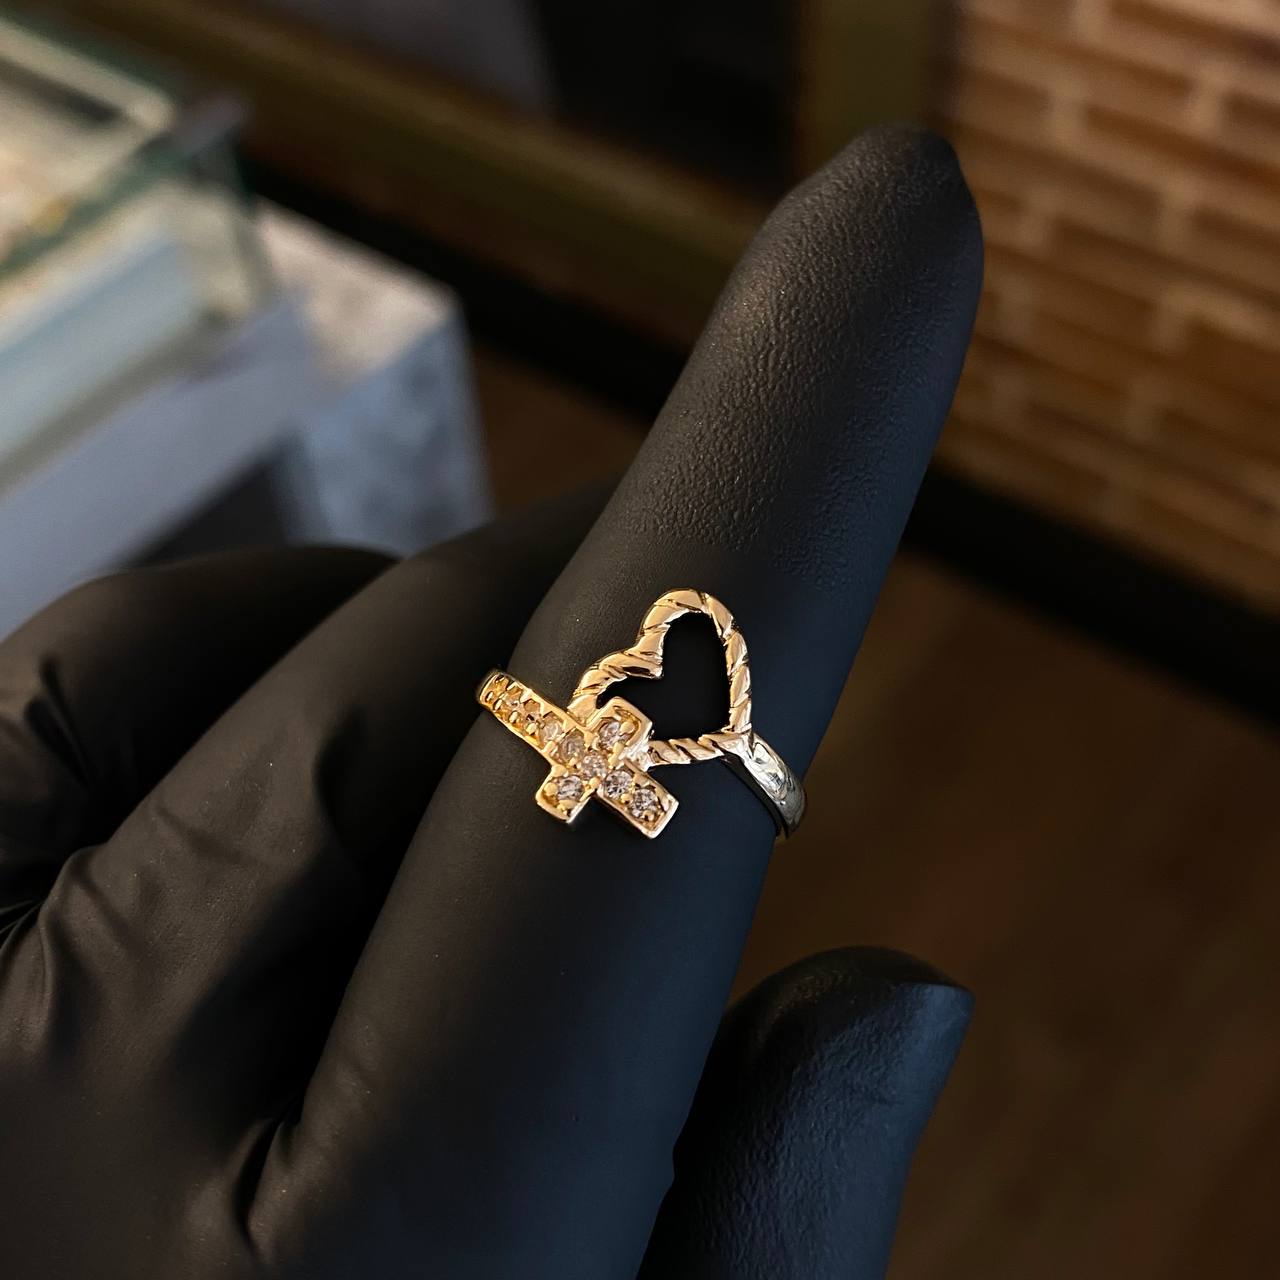  Elegantes anillos de boda para mujer, diseño de cruz